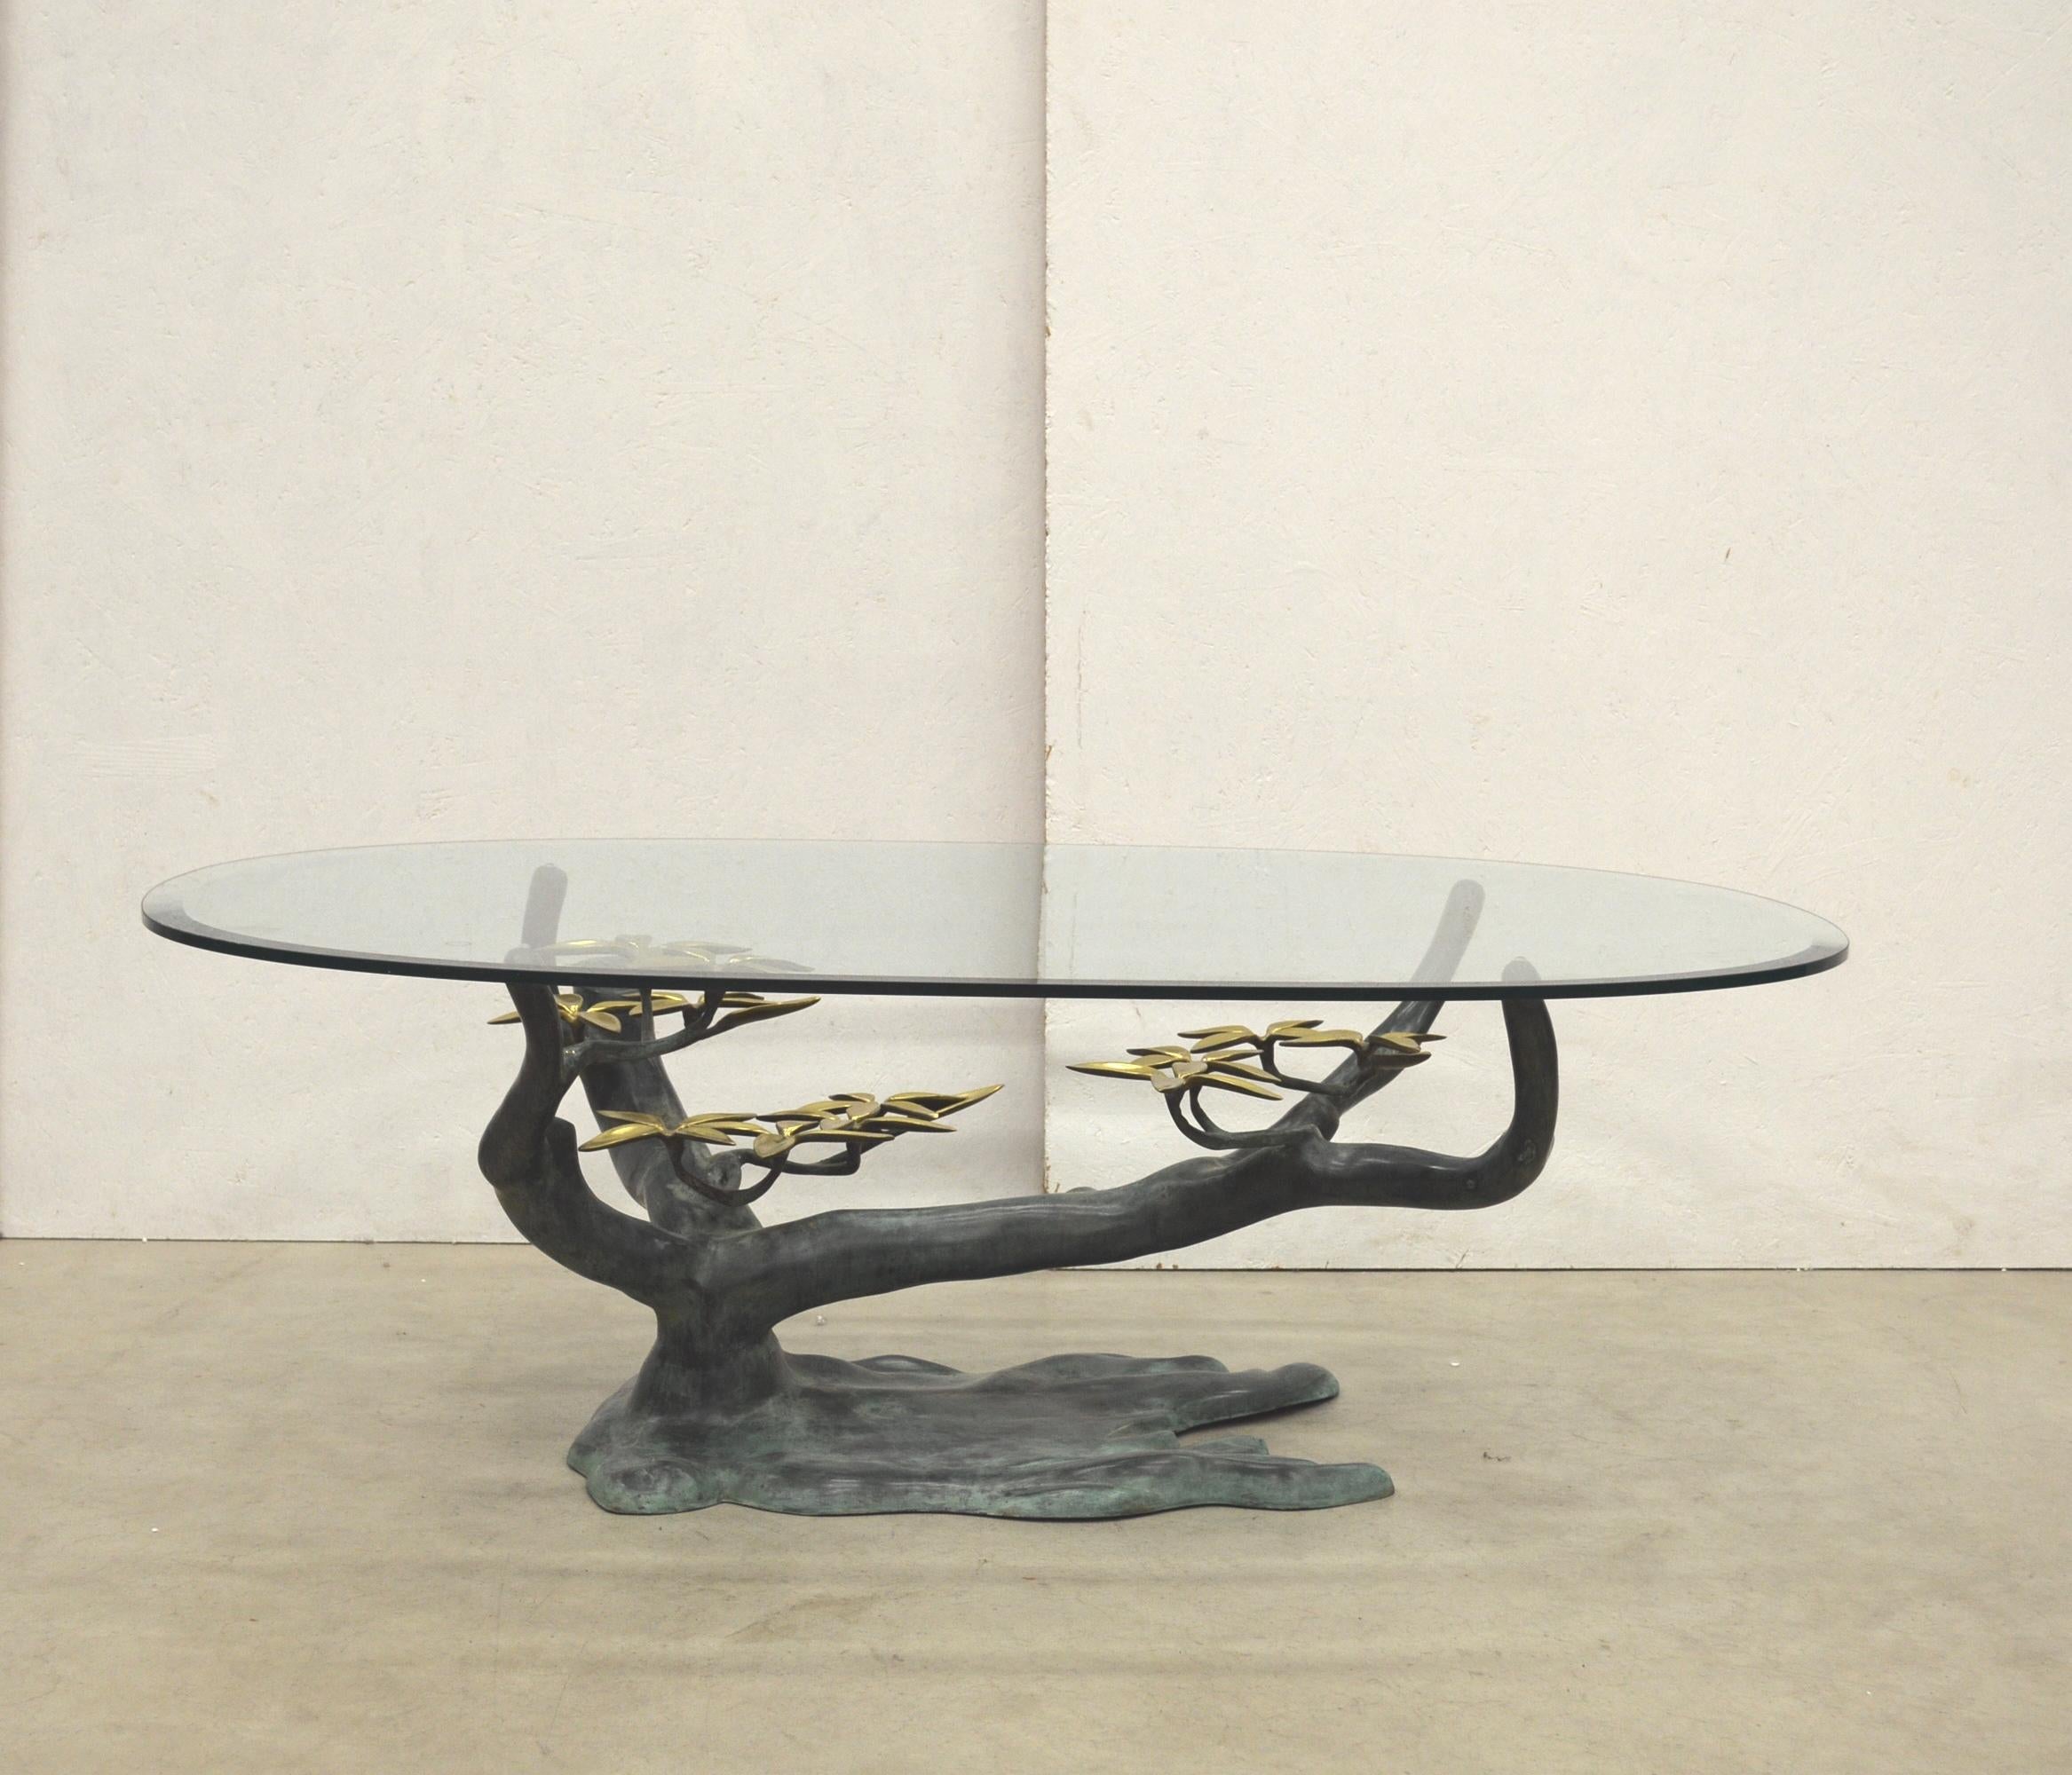 Rare table basse en forme d'arbre Bonsai réalisée par Willy Daro, Belgique 1970.
Base sculpturale avec plateau en verre sablé fin. Éléments décoratifs floraux réalisés en laiton avec une magnifique patine.

Plateau en verre épais et fin qui